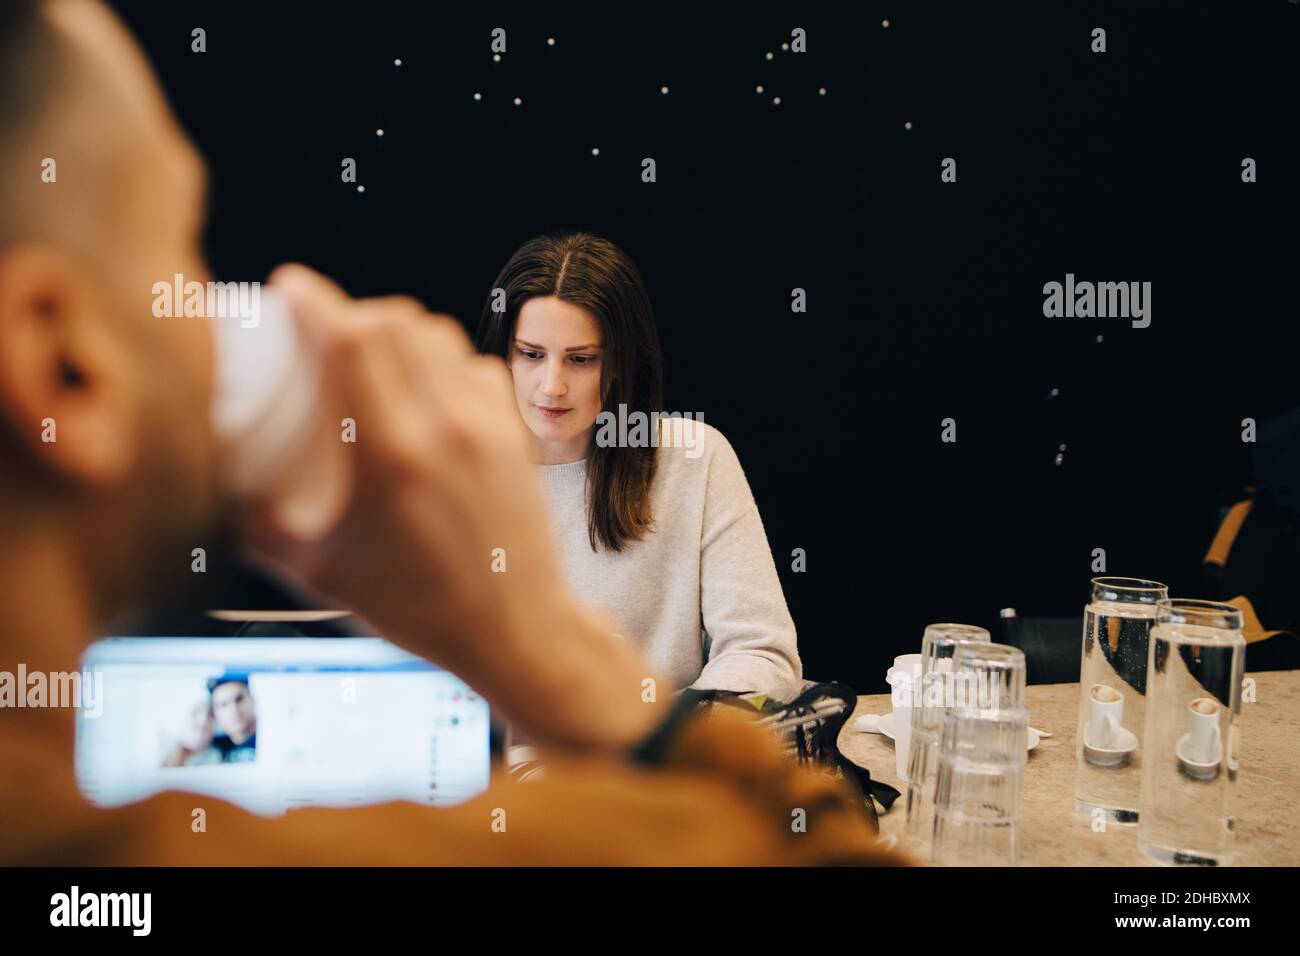 Männlicher Programmierer trinkt Kaffee, während zuversichtlich junge weibliche Hacker arbeiten Am Schreibtisch in einem kleinen Büro Stockfoto